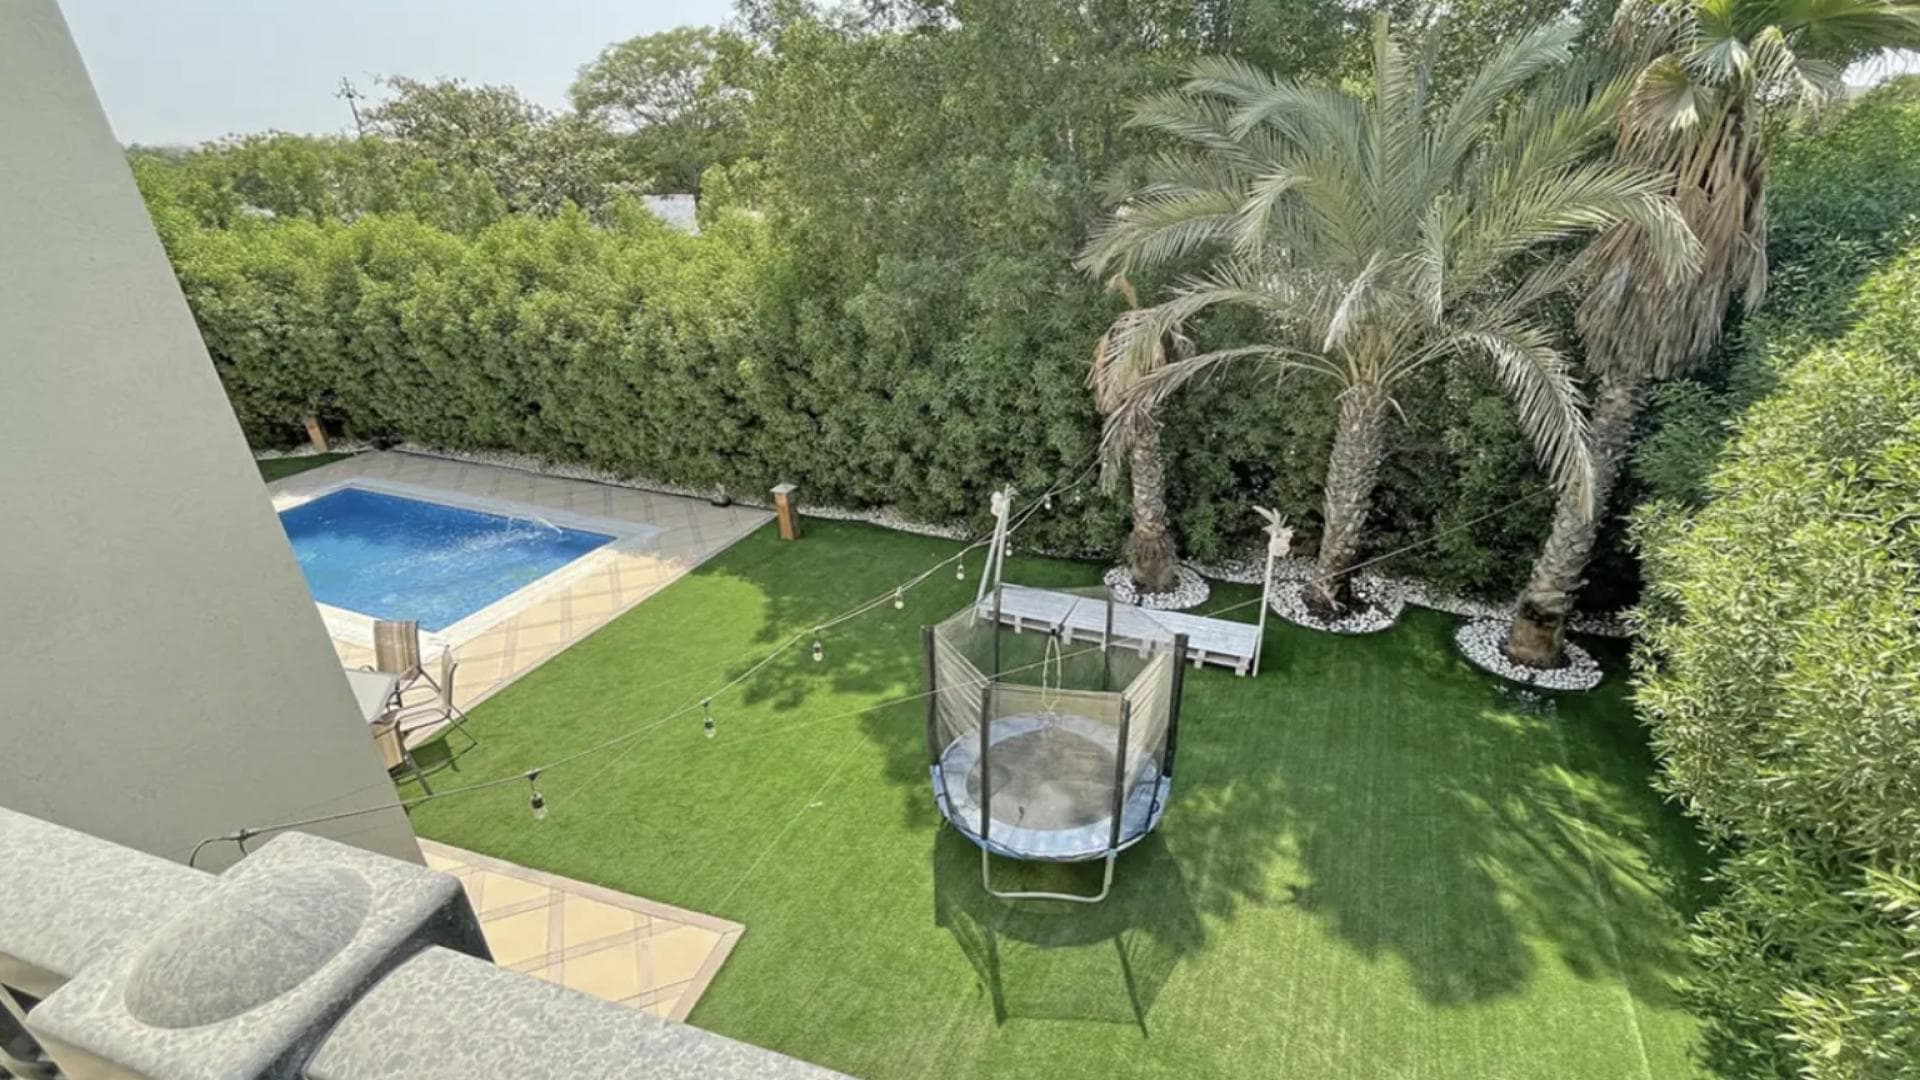 4 Bedroom Villa For Rent Al Thamam 13 Lp34806 220f839d0495a200.png